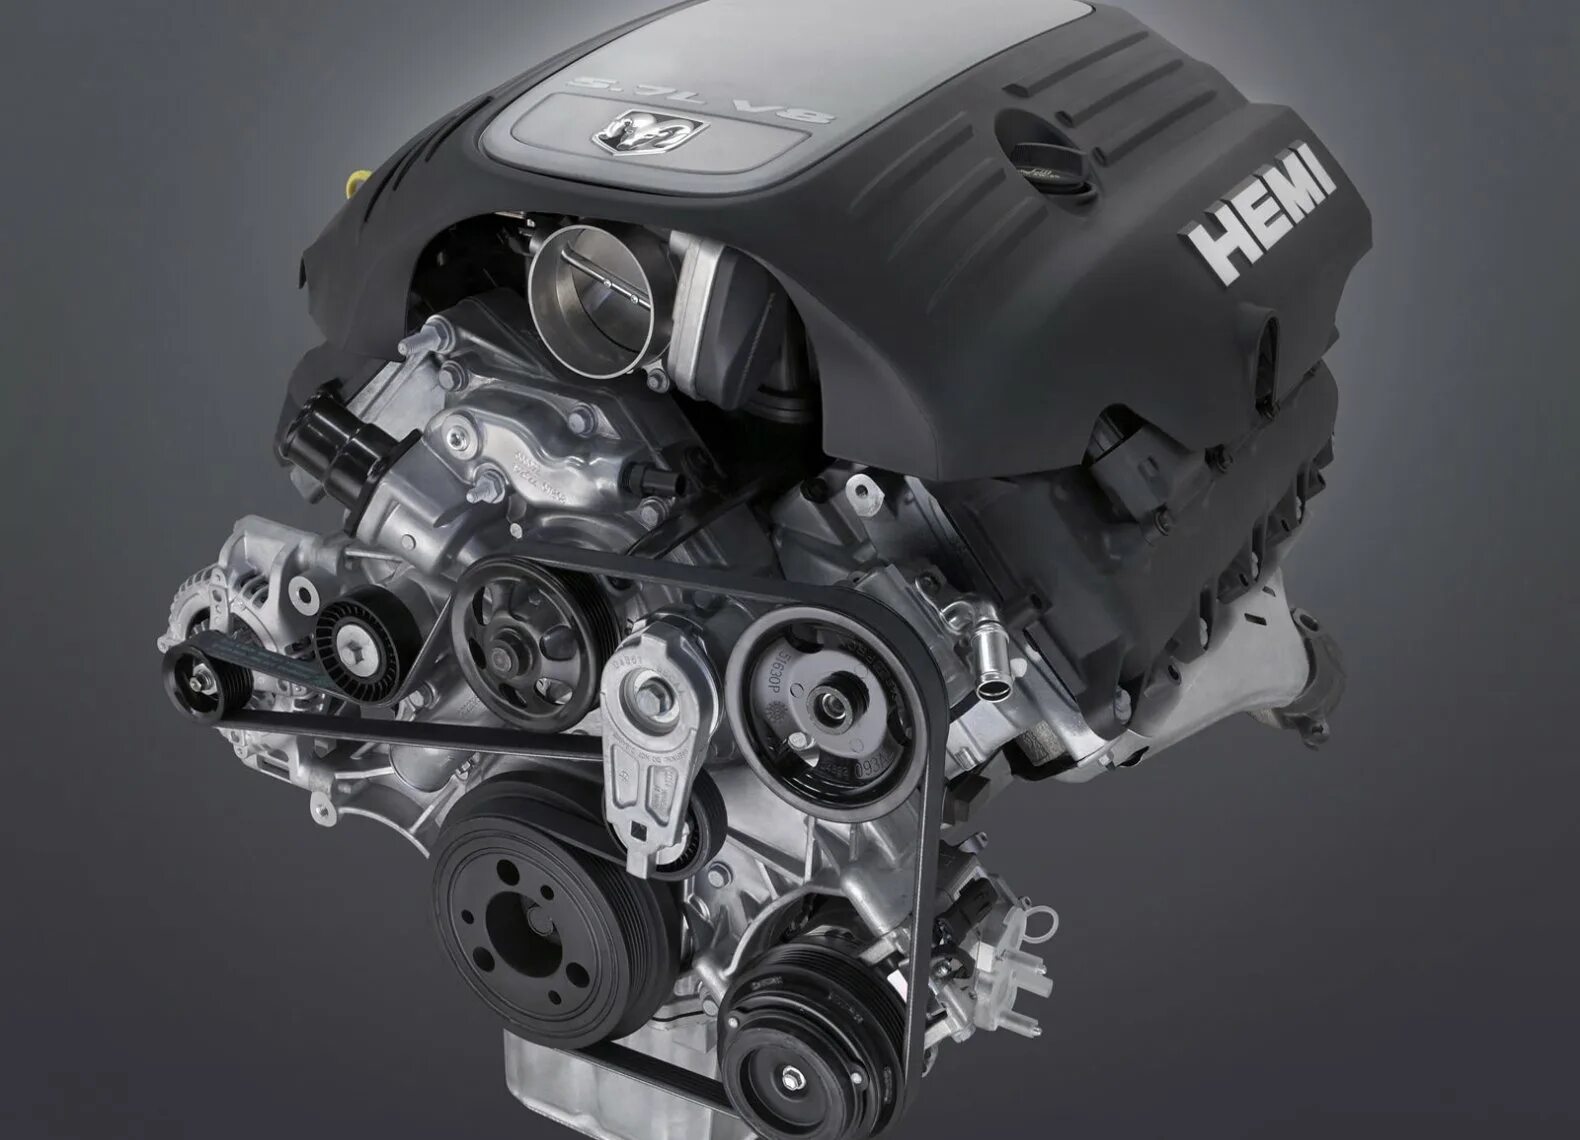 05 007. Мотор Hemi 5.7. Мотор Hemi v8. Двигатель dodge Ram 5.7. Мотор Hemi 5.7 dodge Ram.